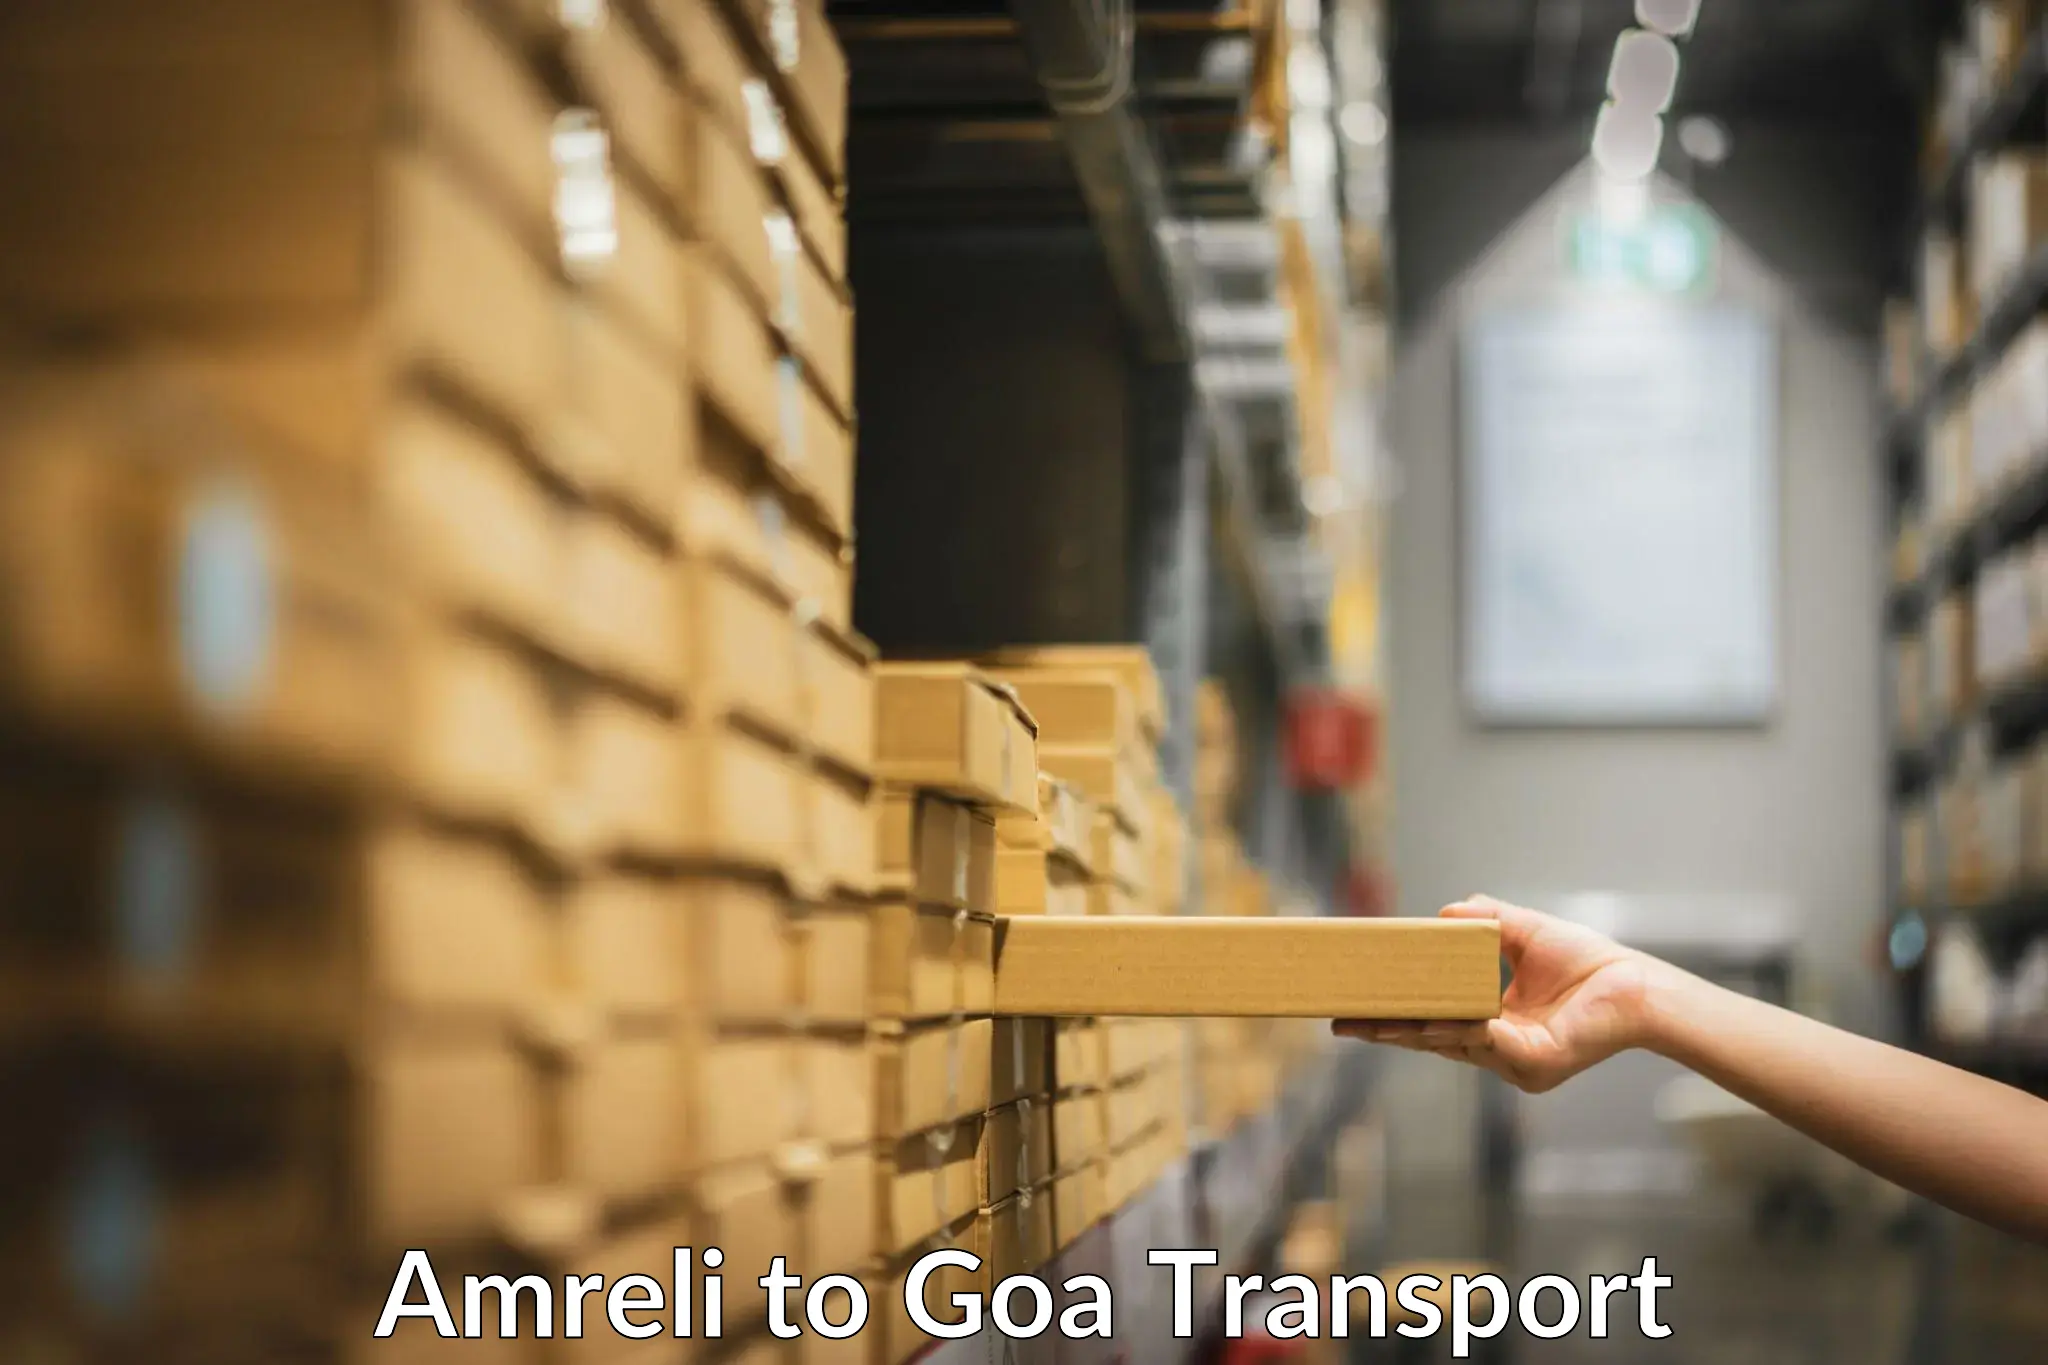 Nearest transport service Amreli to Ponda